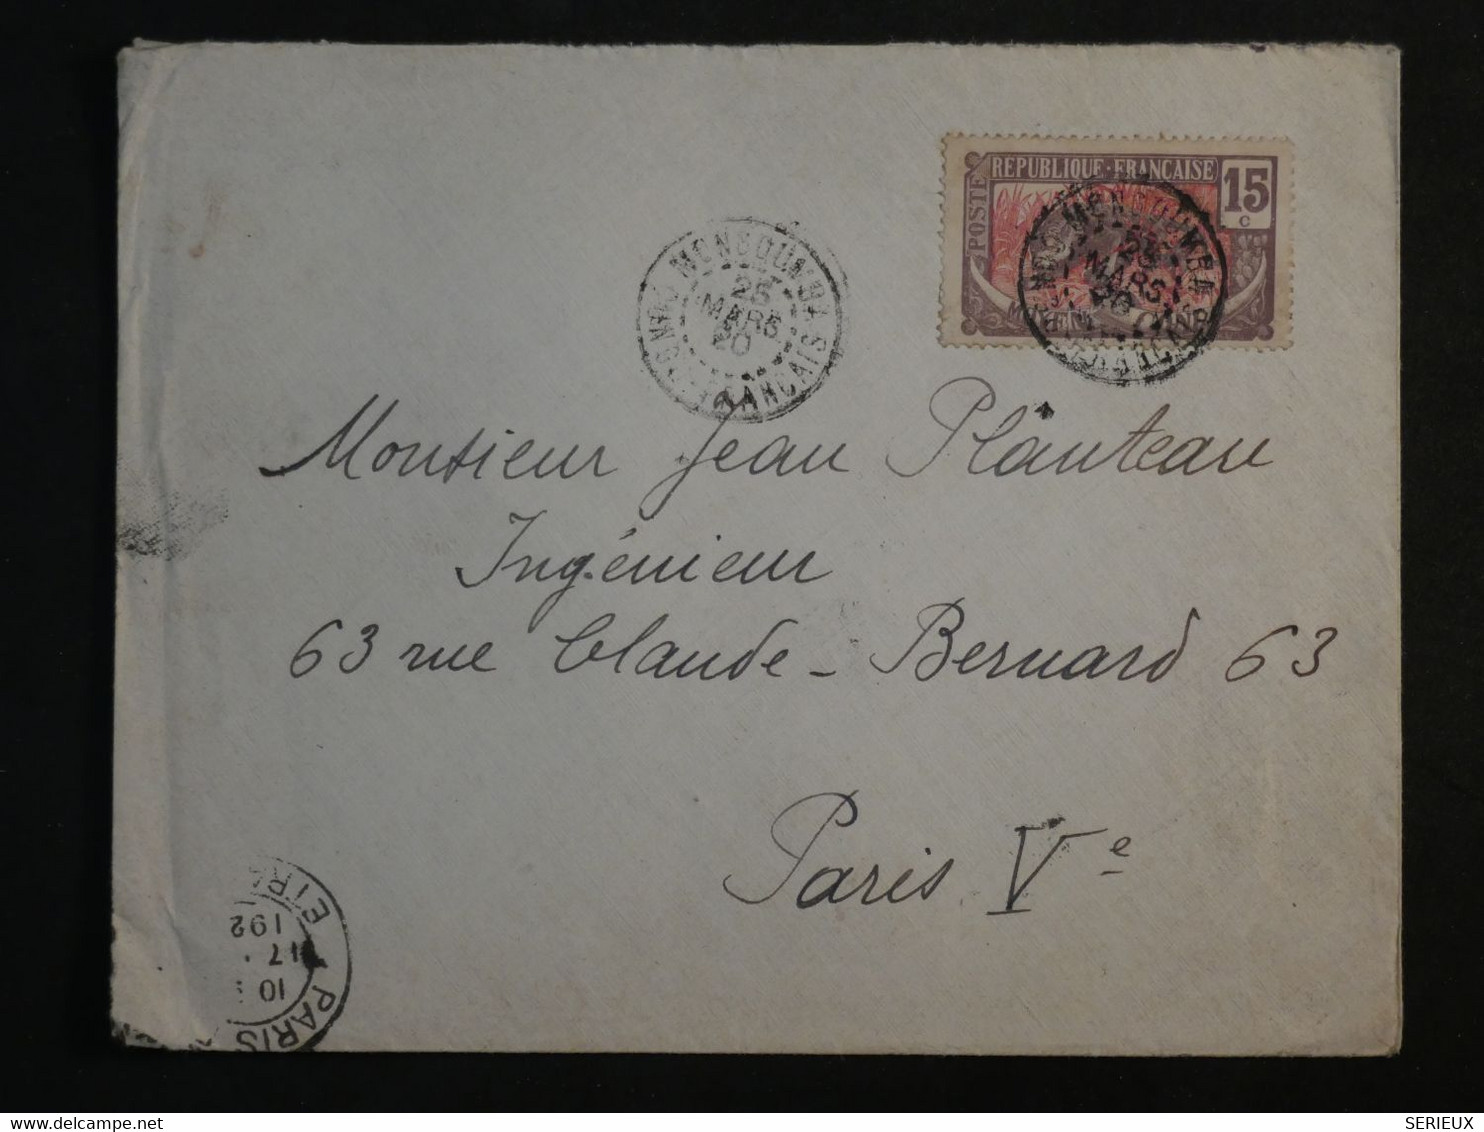 BM11  CAMEROUN CONGO FRANC.  BELLE  LETTRE 1920  PETIT BUREAU  MONGOUMBI ?  A PARIS FRANCE + +AFFRANCH. INTERESSANT++++ - Lettres & Documents